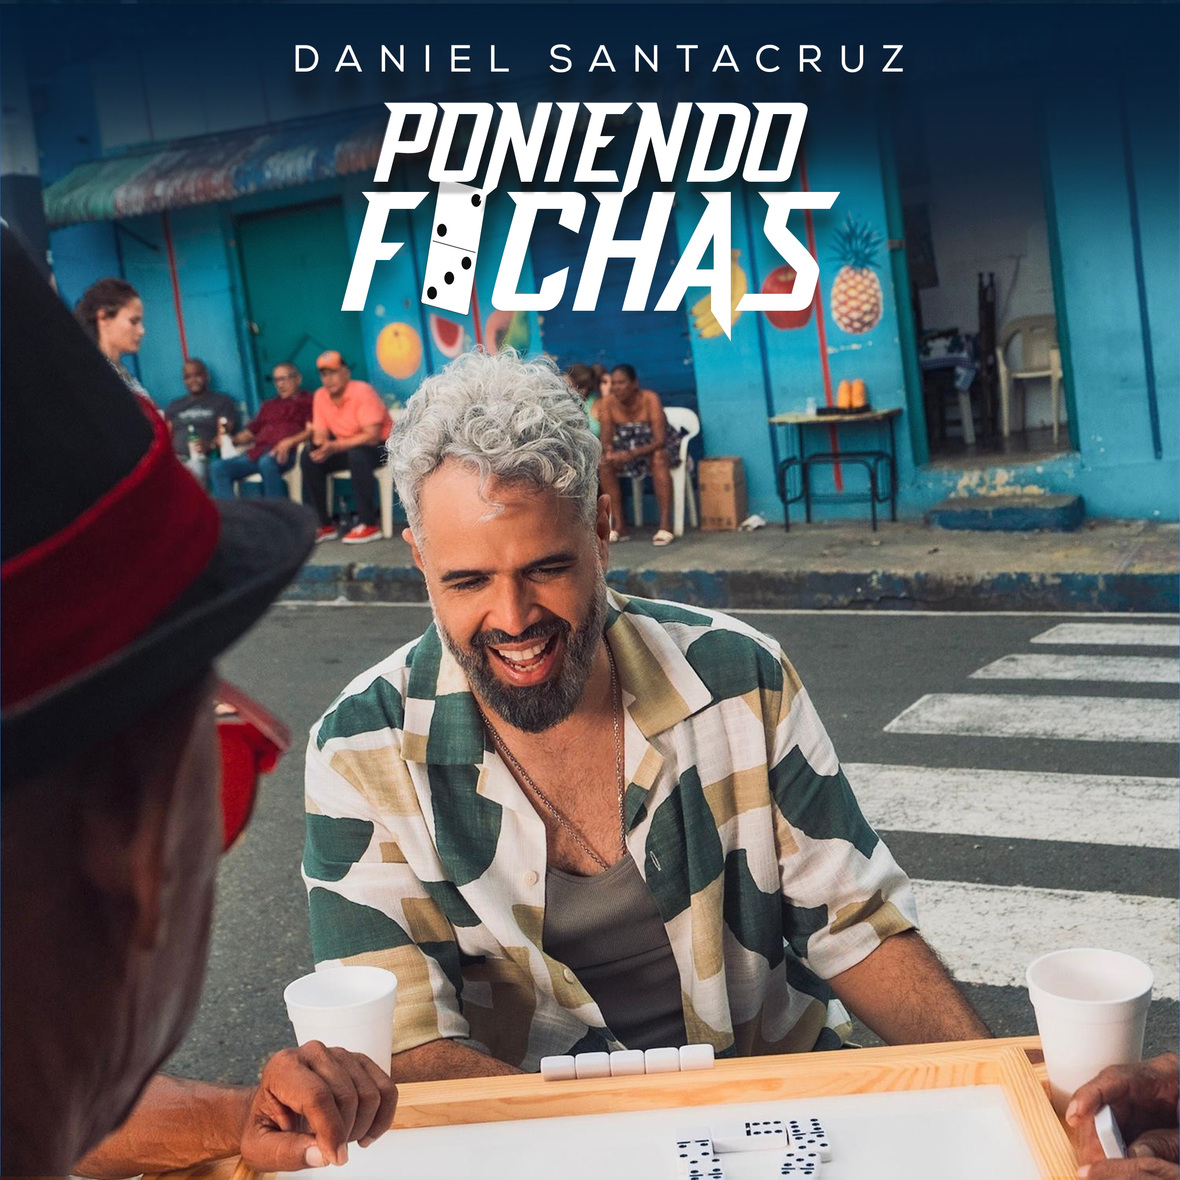 DANIEL SANTACRUZ lanza nuevo sencillo “Poniendo Fichas”